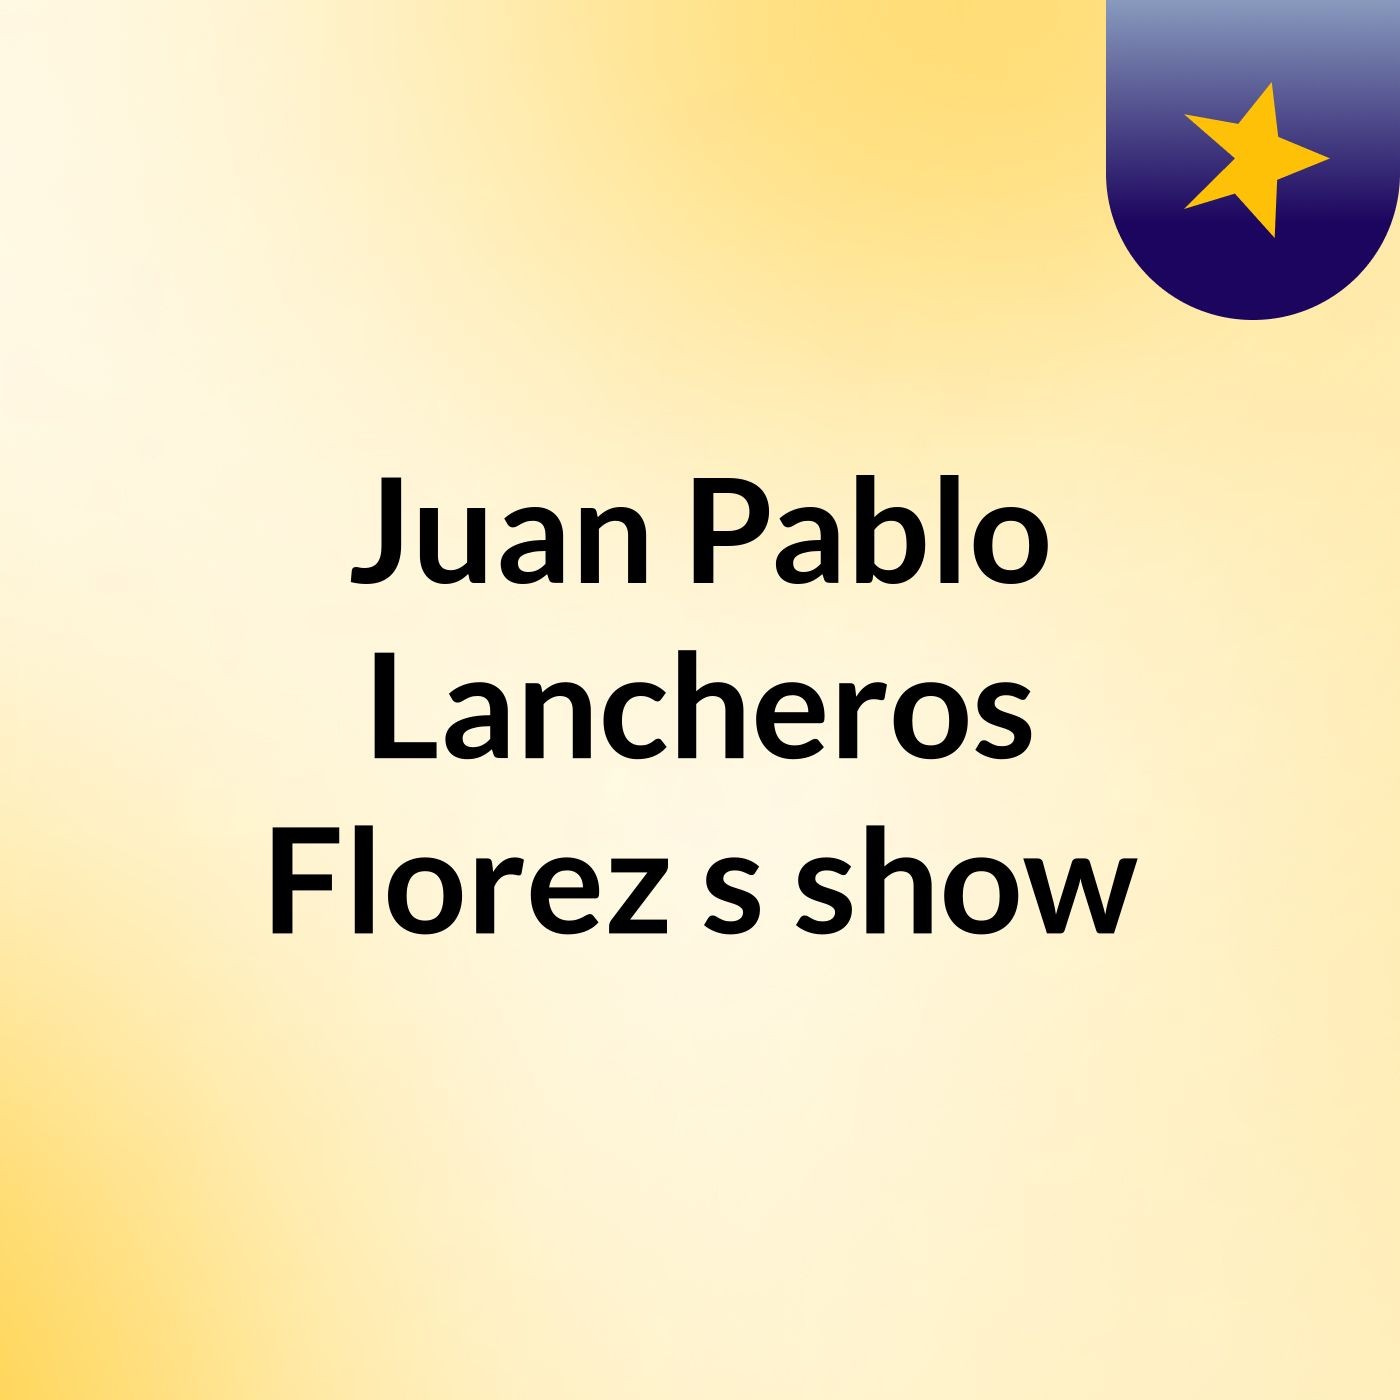 Juan Pablo Lancheros Florez's show